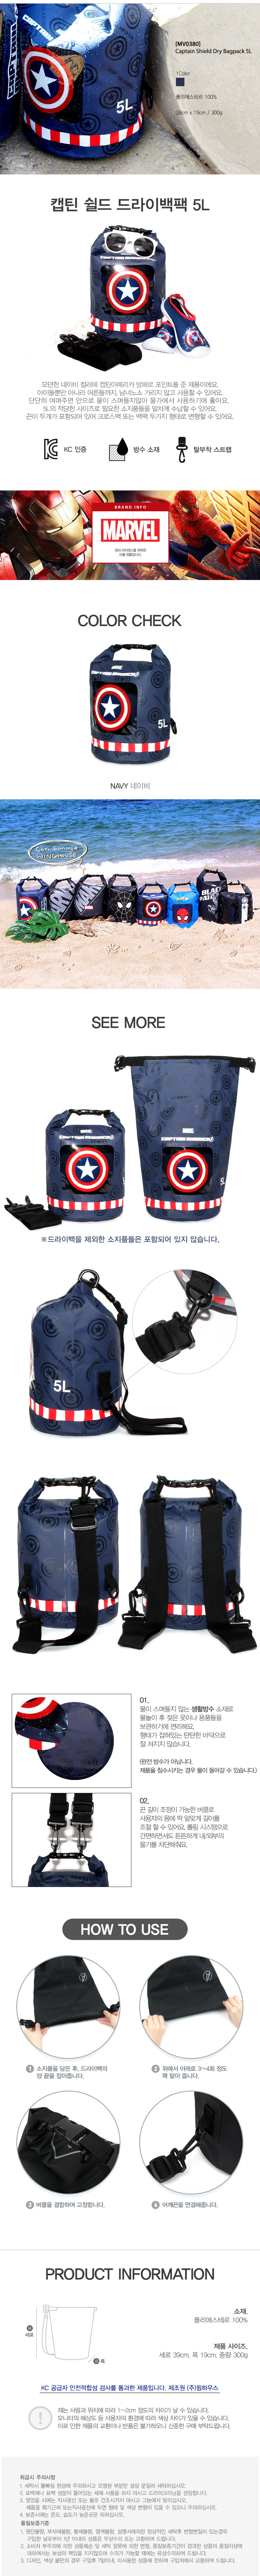 韓國品牌 漫威英雄系列防水袋-美國隊長5L